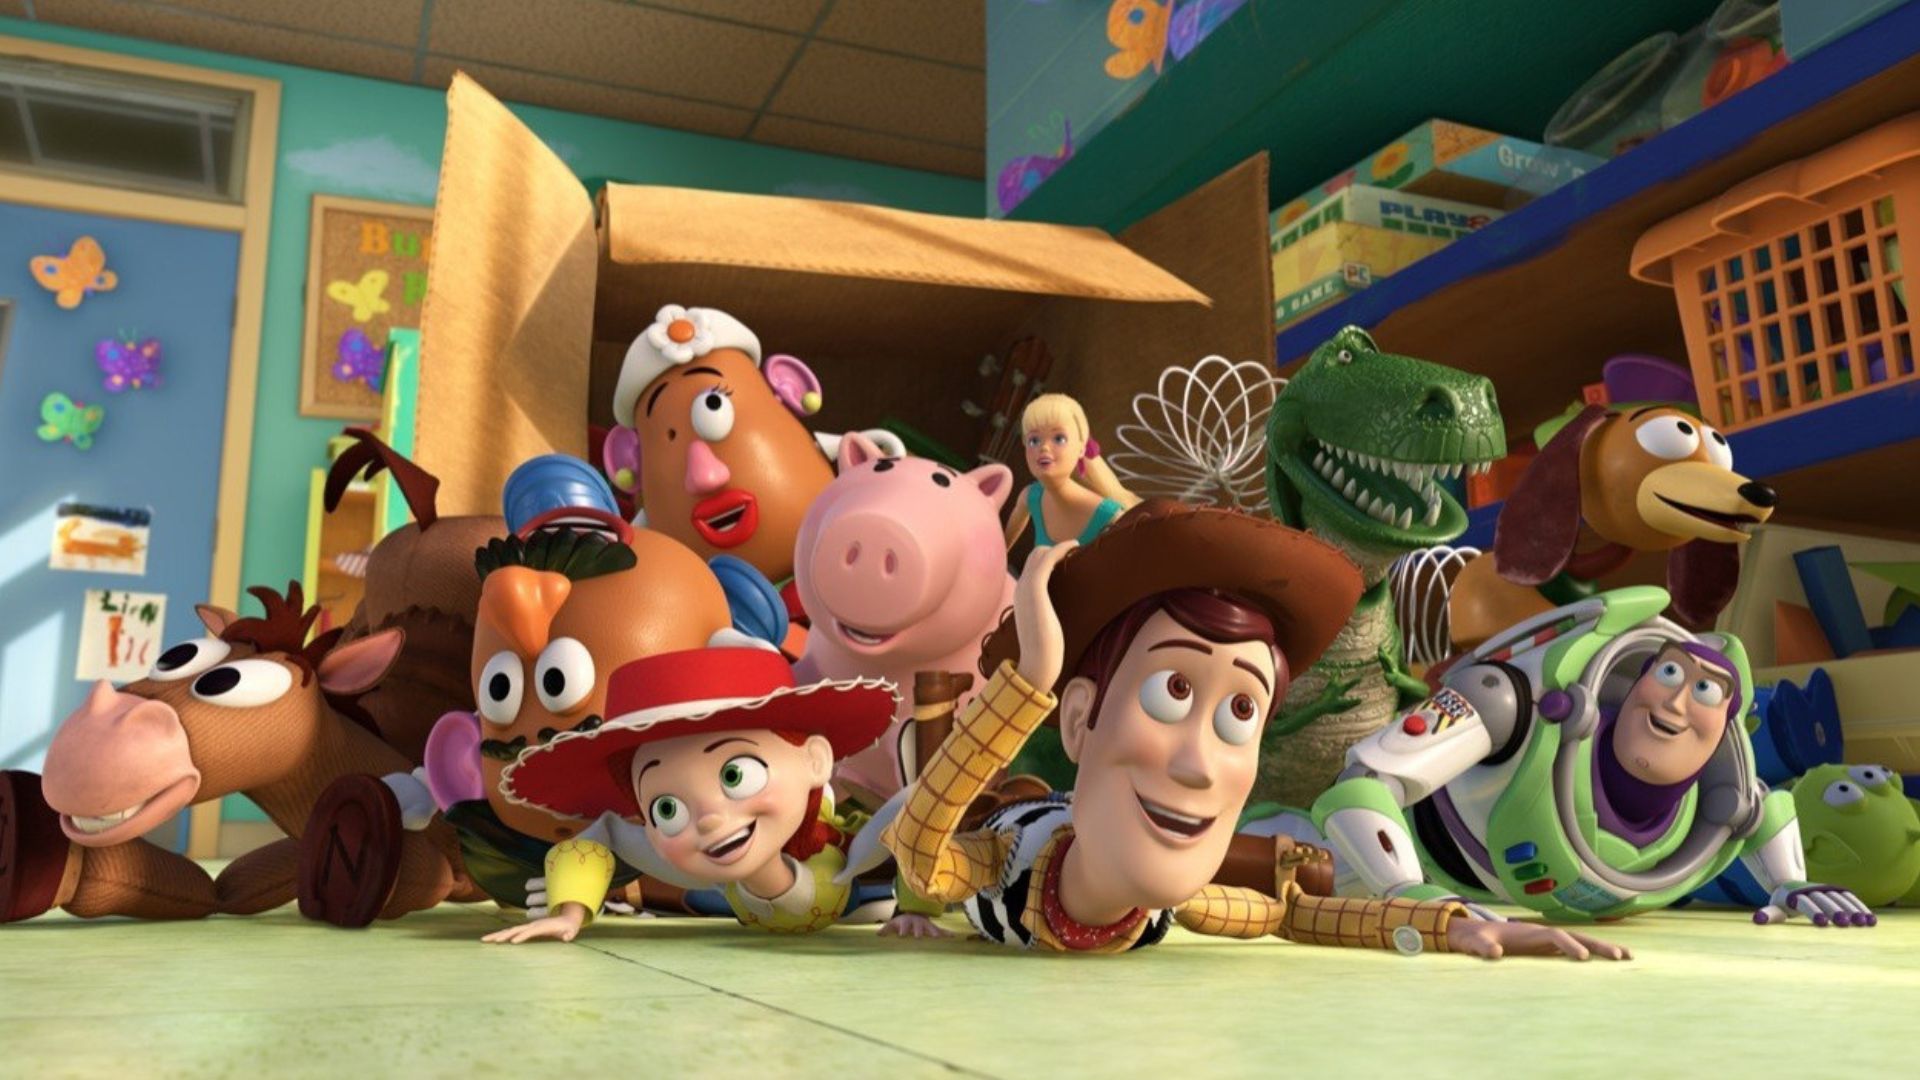 Toy Story 5  Tim Allen pode ter confirmado retornos de Buzz e Woody